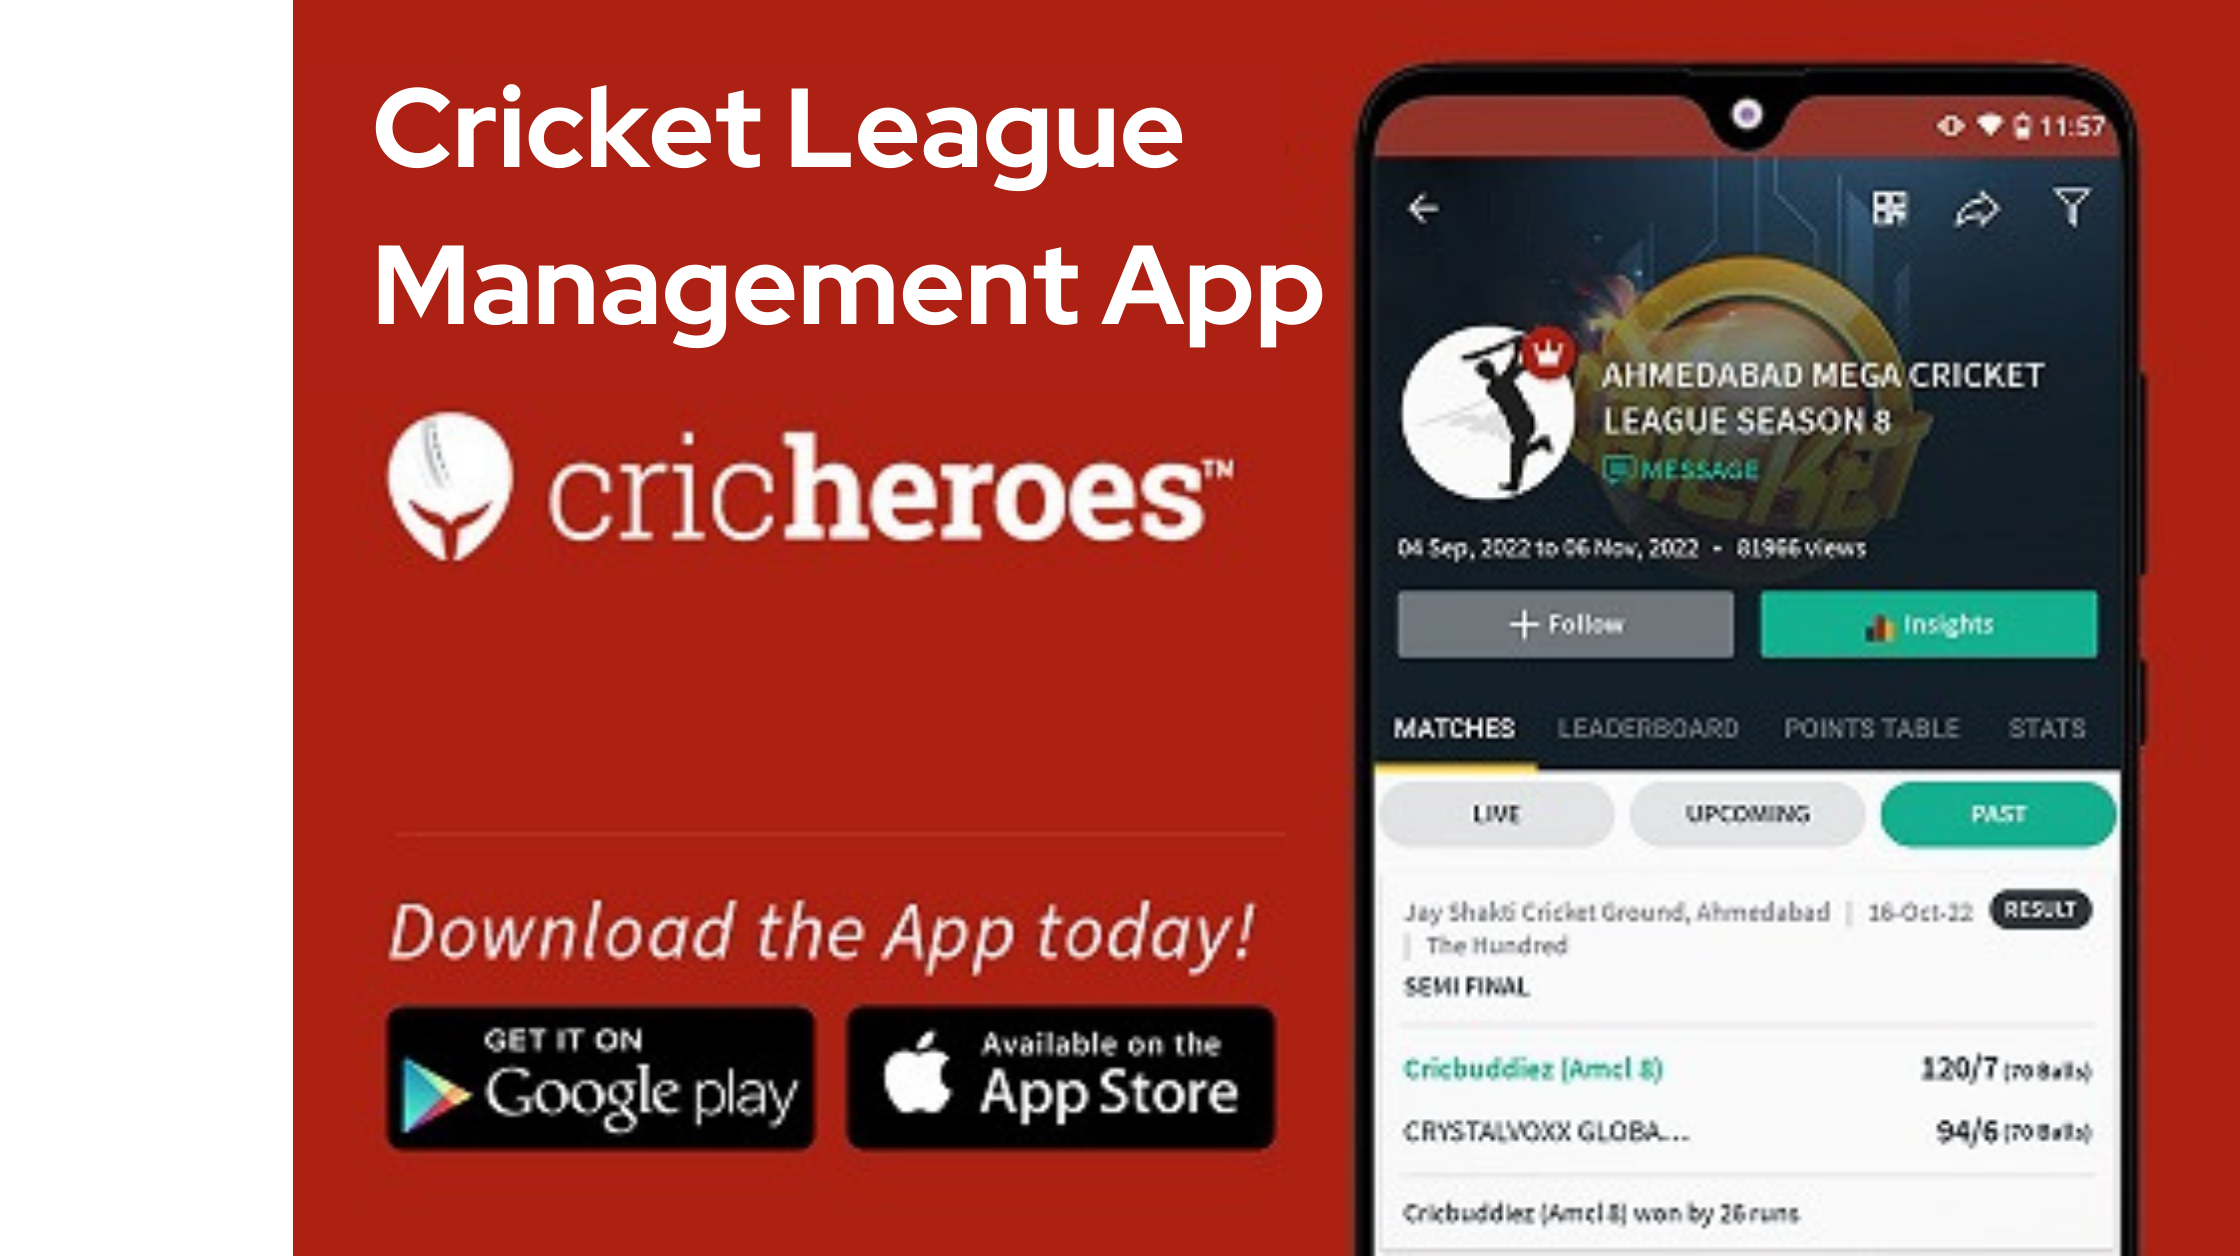 Cricket League Management Power of the CricHeroes App